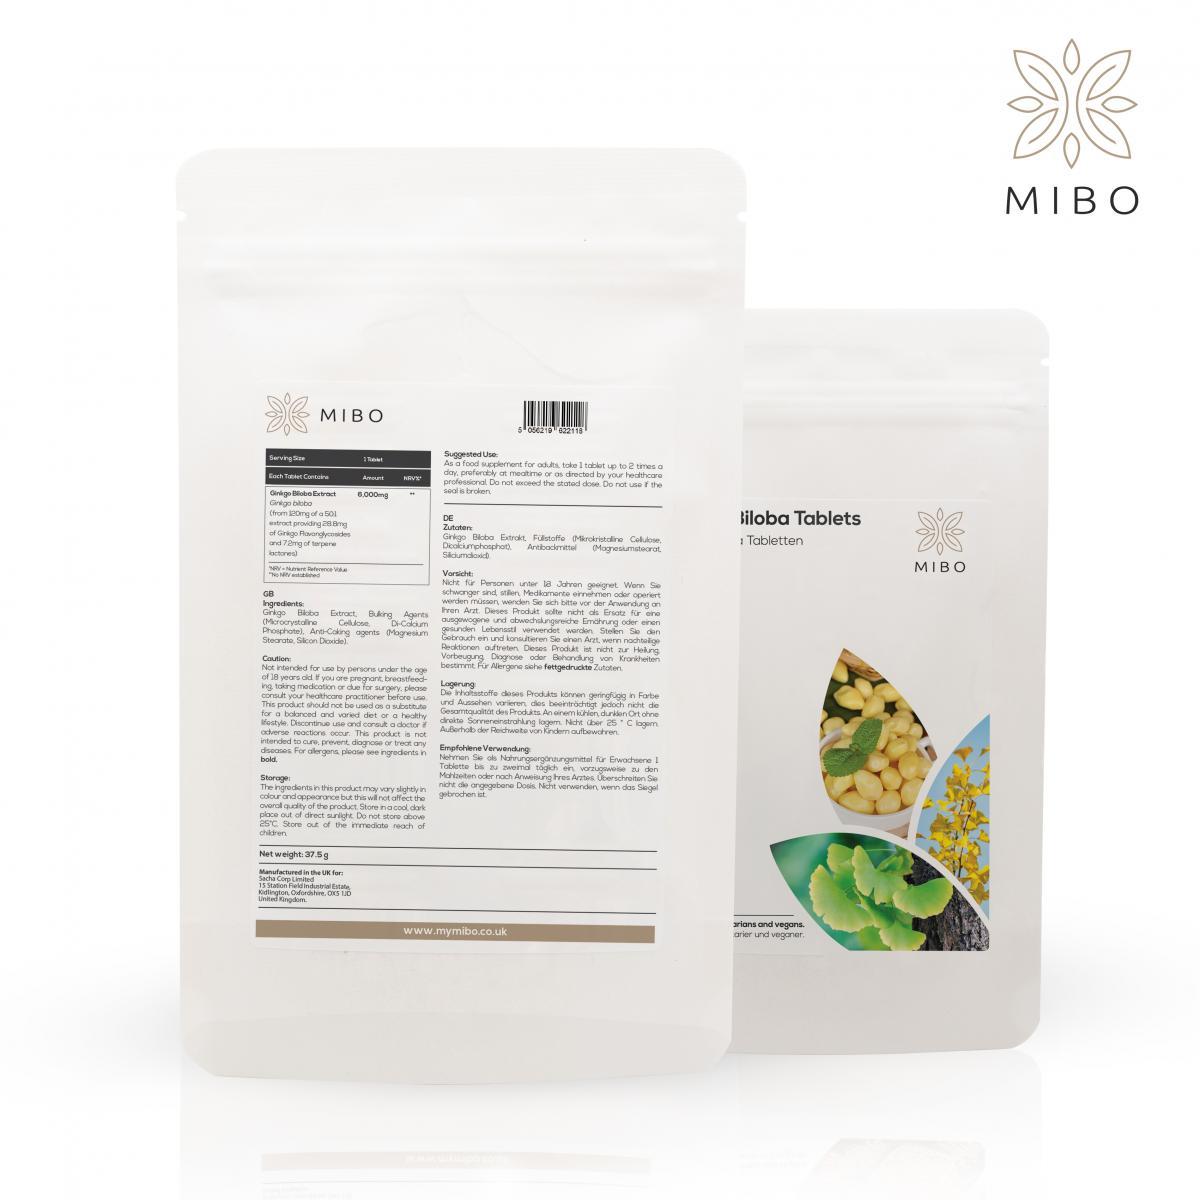 MiBo HeartnBrain Bundle - Ginkgo Biloba 6000mg + Sage Leaf 800mg + Vitamin K2 MK-7 100mcg